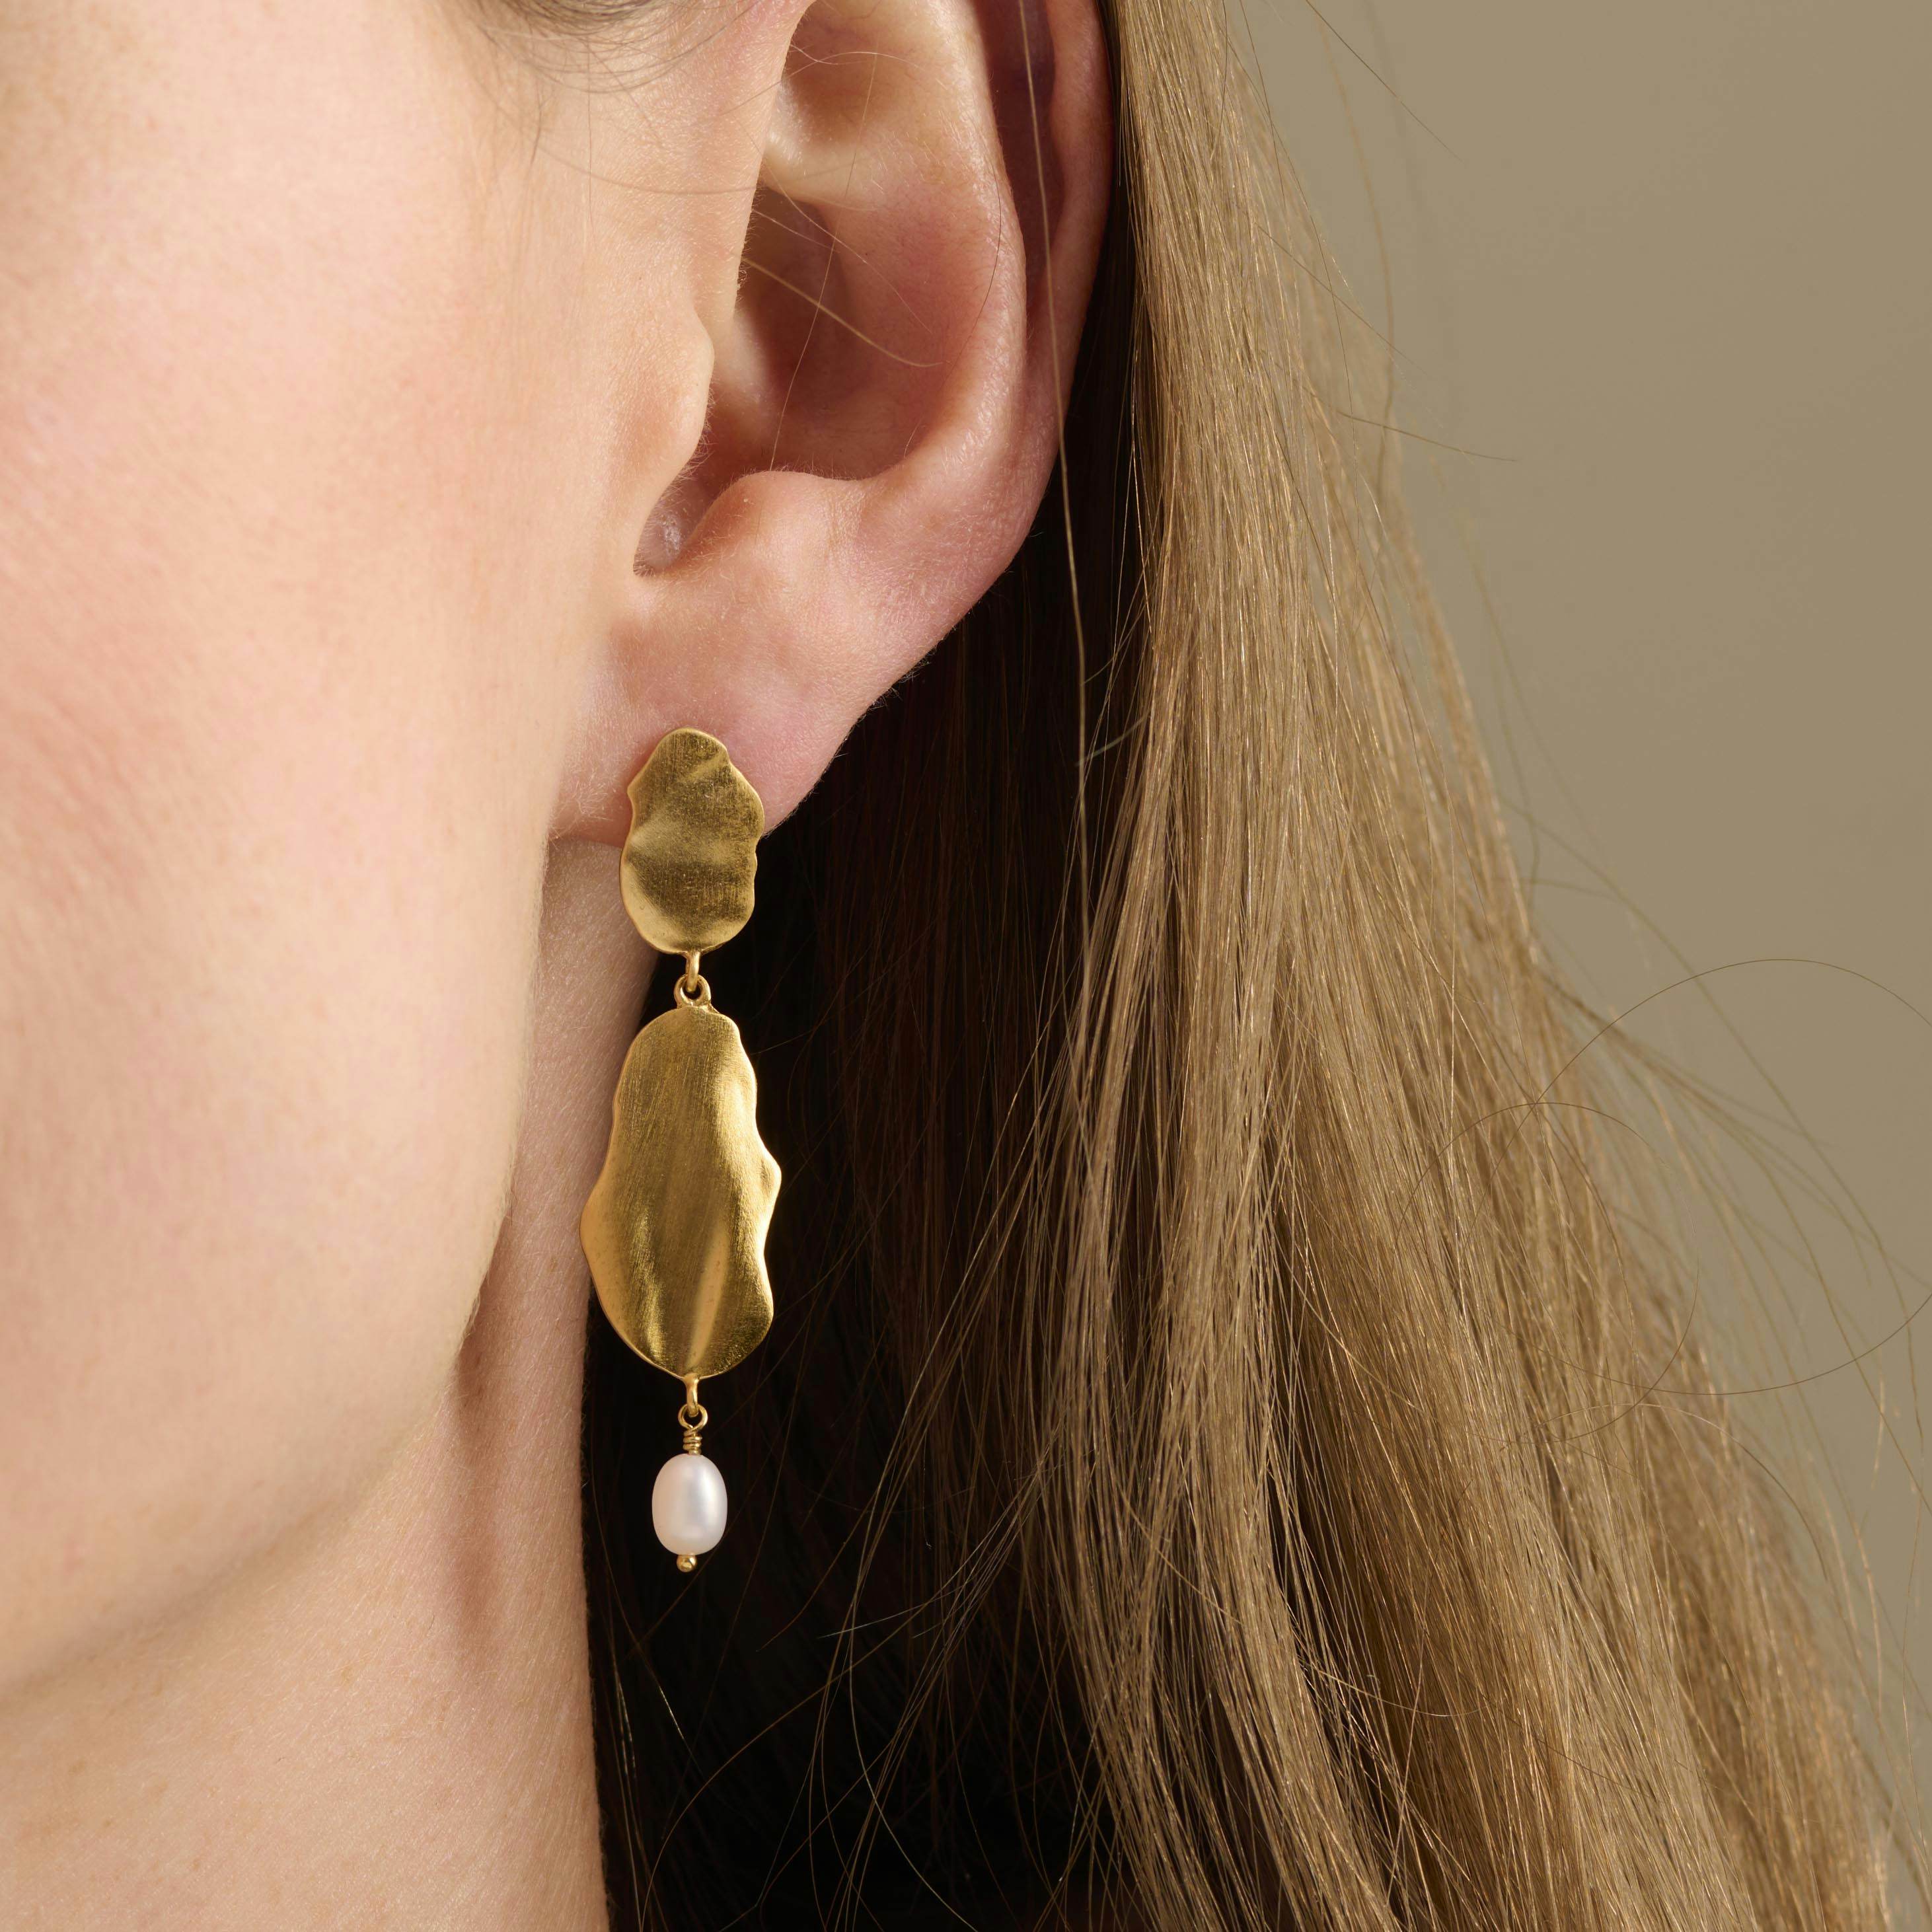 Drift Earrings from Pernille Corydon in Silver Sterling 925